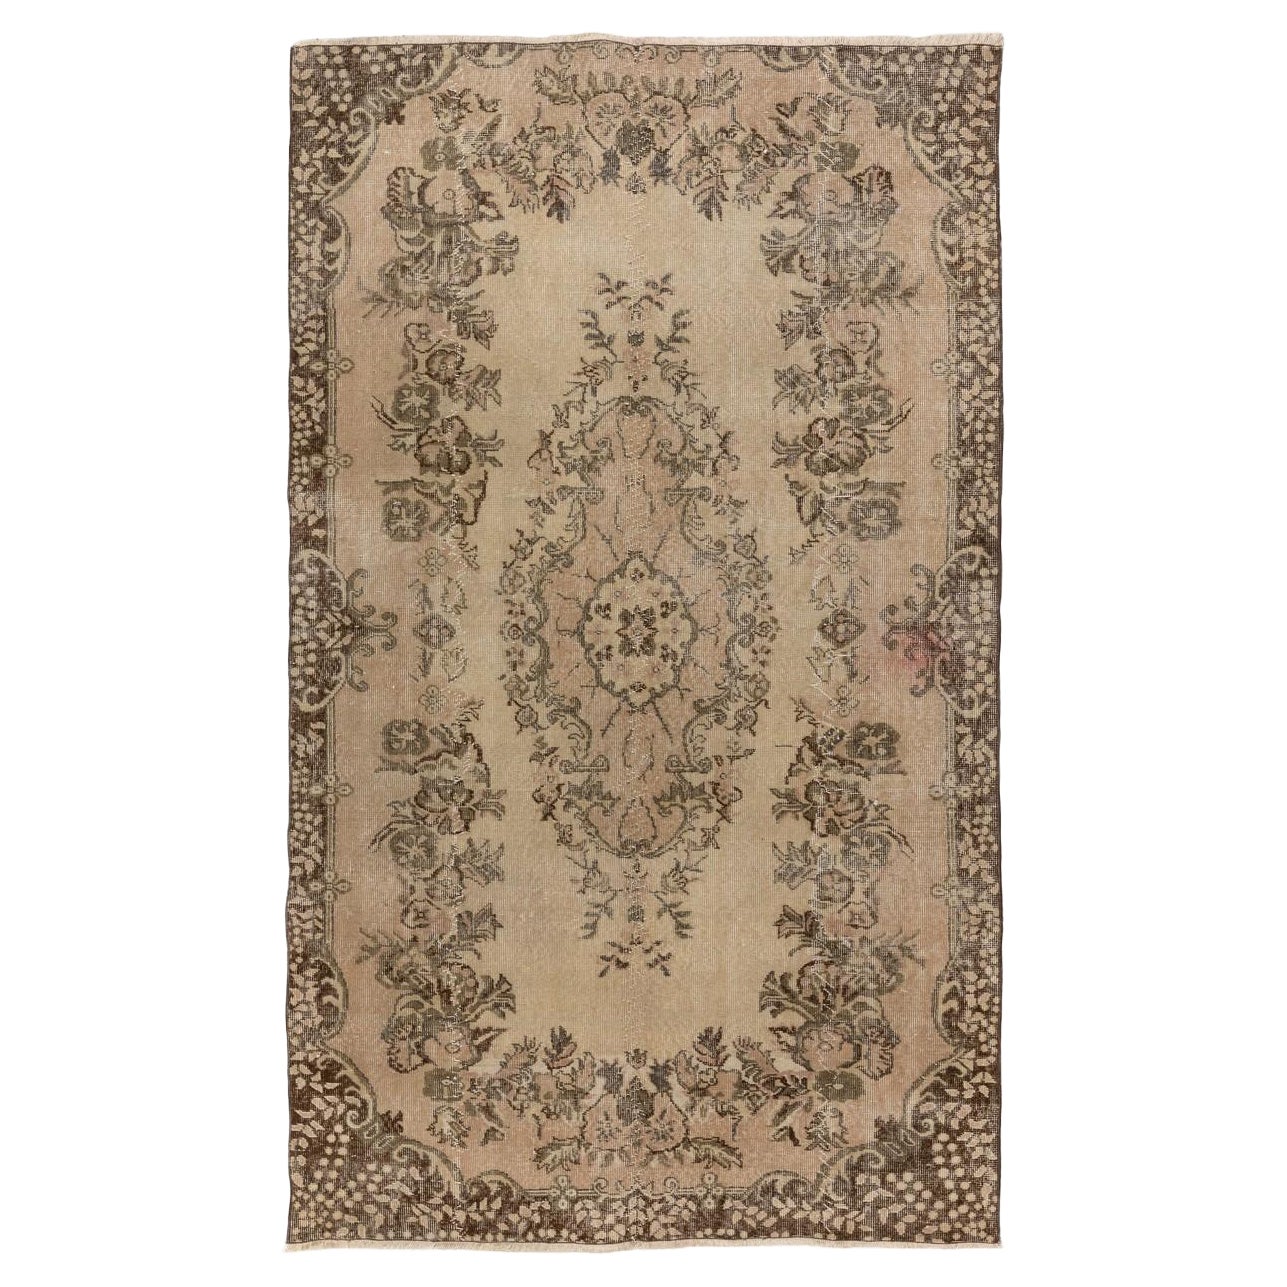 5.4x9 Ft Room Size Handmade Vintage Turkish Area Rug, Baroque Design Carpet